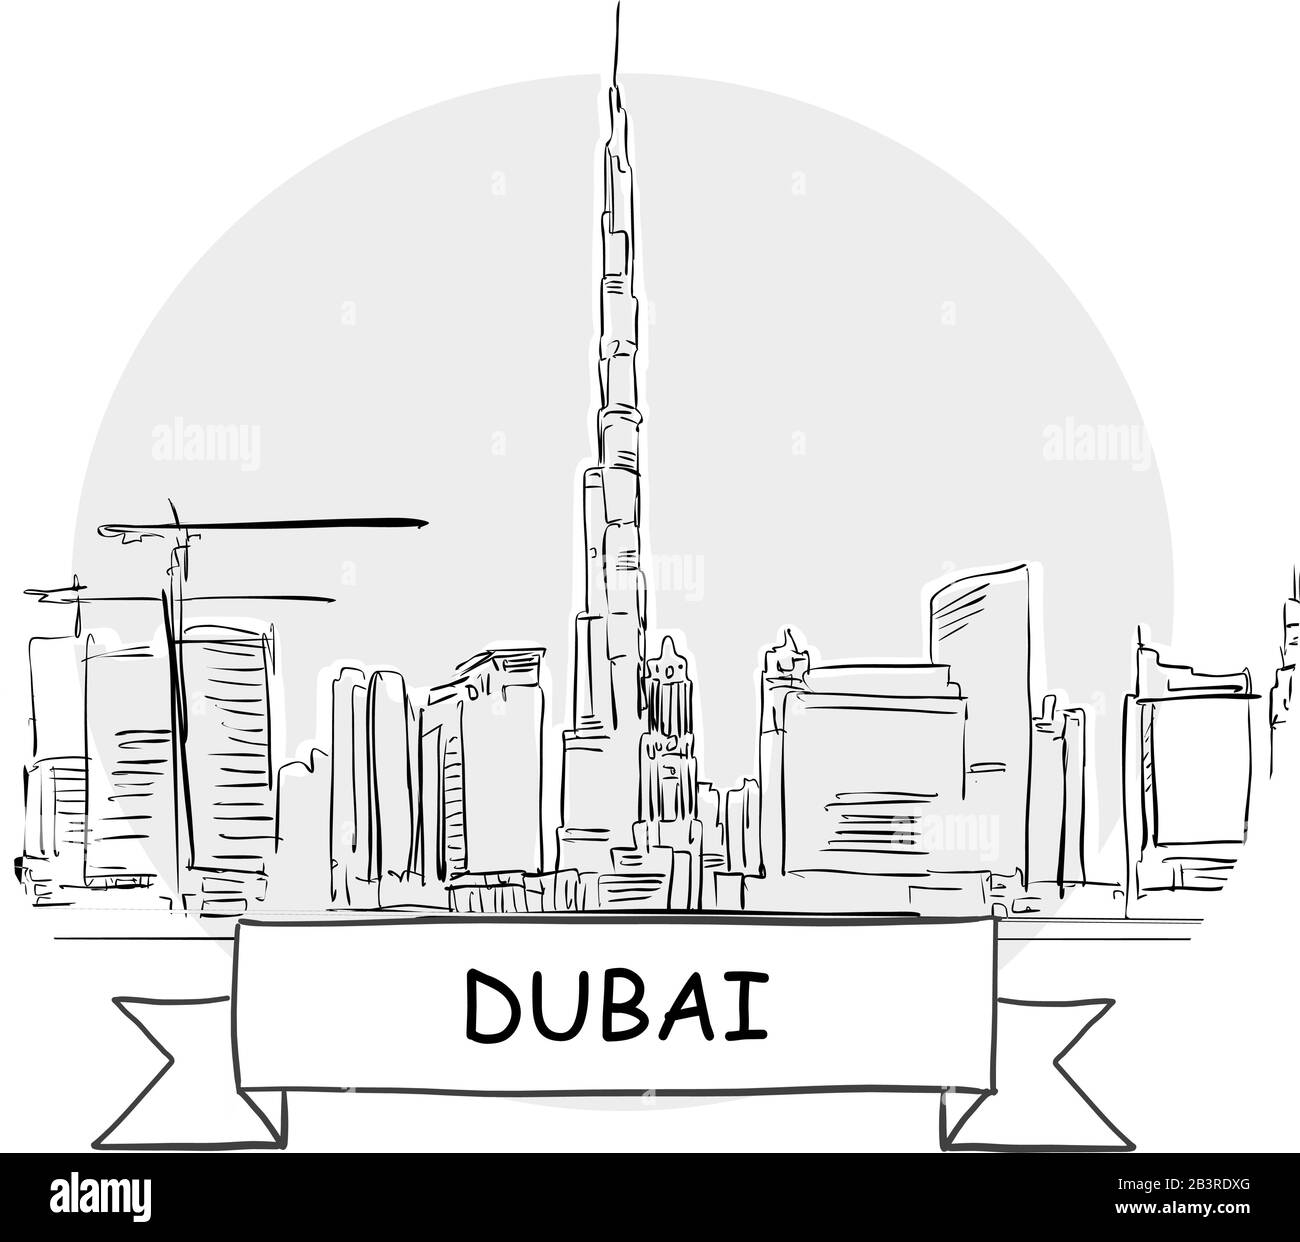 Dubai Hand-Drawn Urban Vector Sign. Schwarze Strichzeichnung mit Farbband und Titel. Stock Vektor